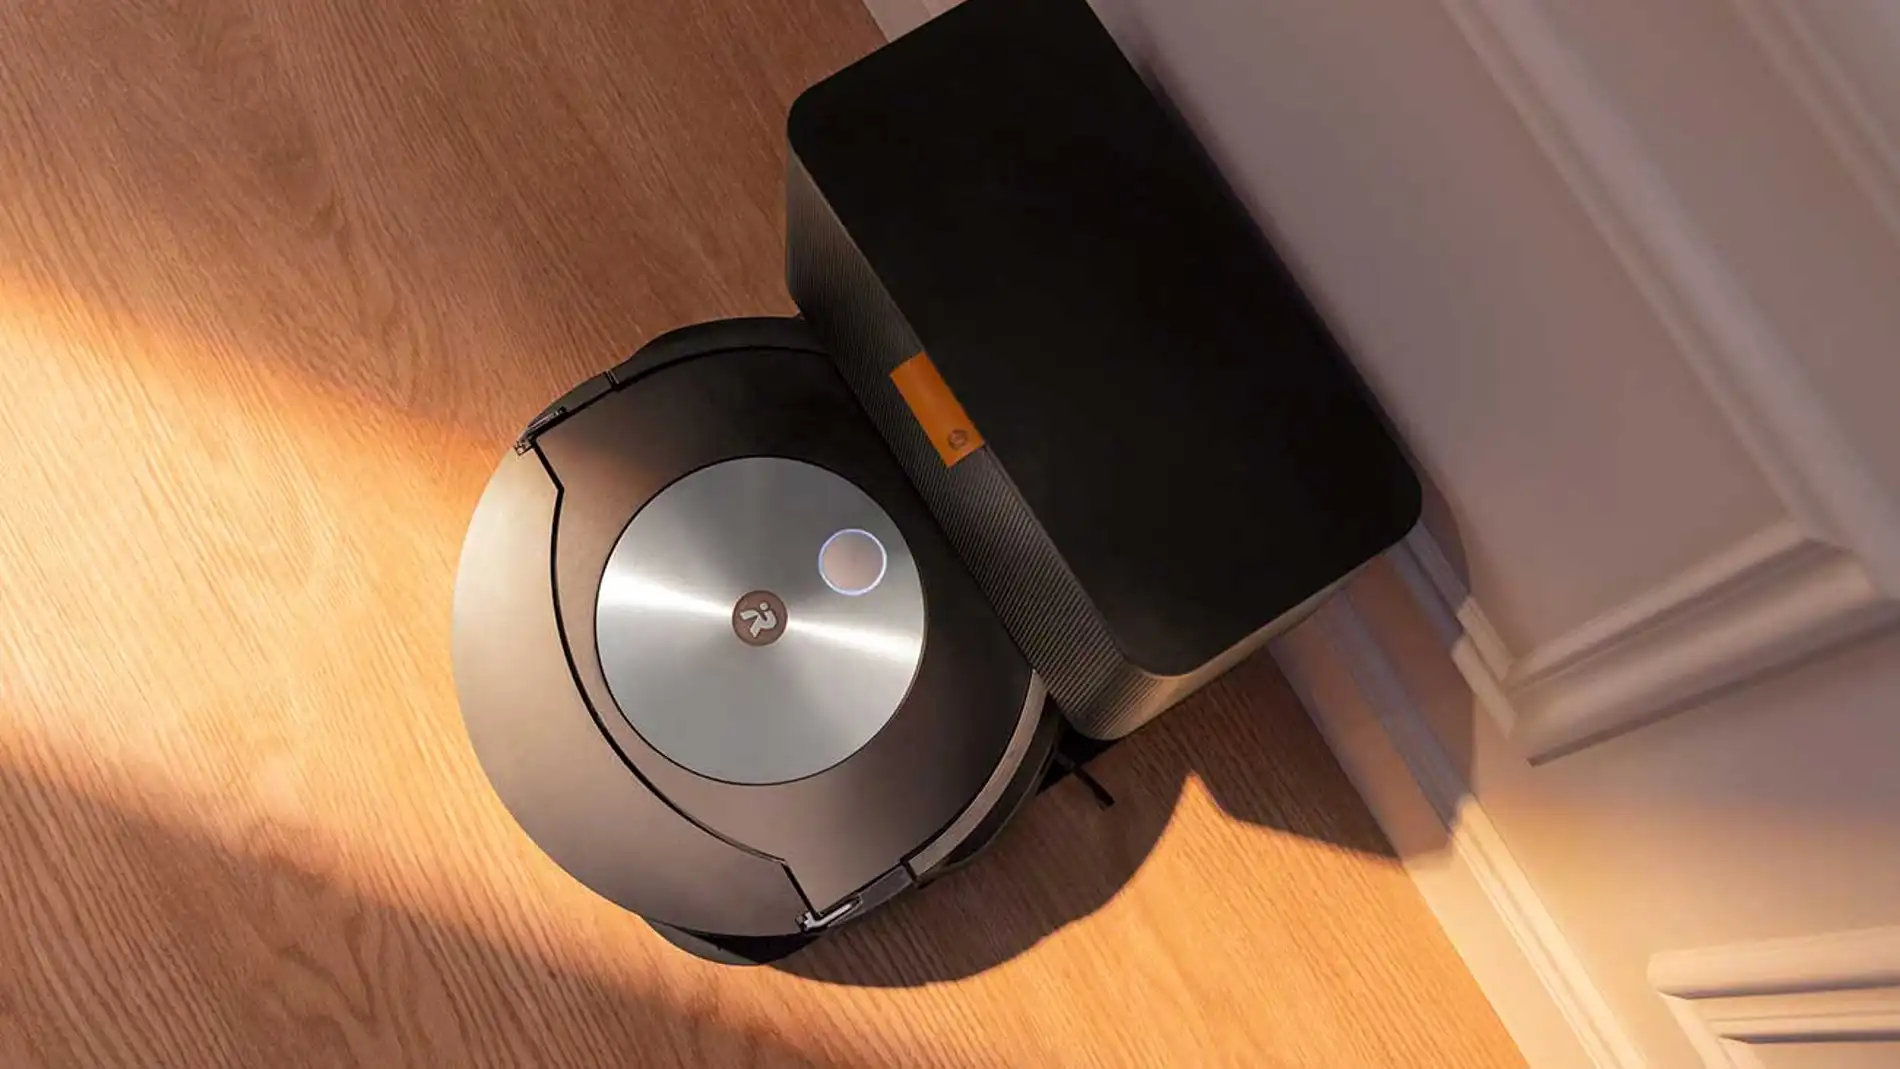 Roomba i7+, análisis: el robot aspirador que se LIMPIA SÓLO 